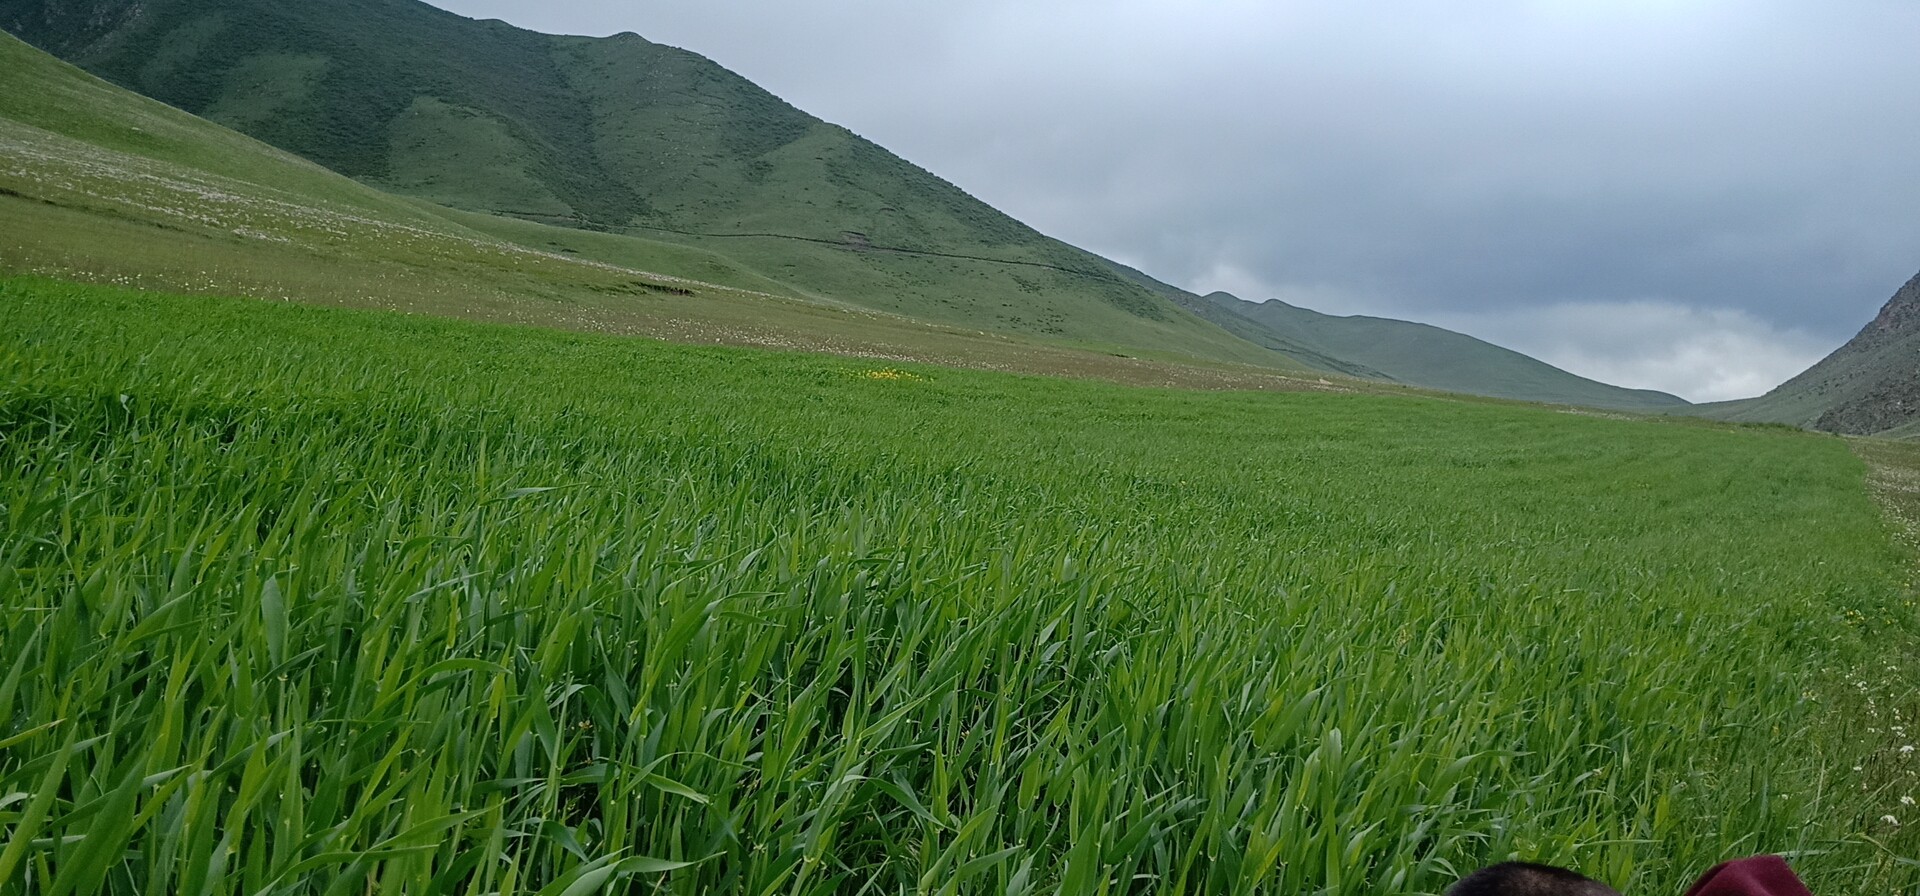 Barley field at 2500m altitude